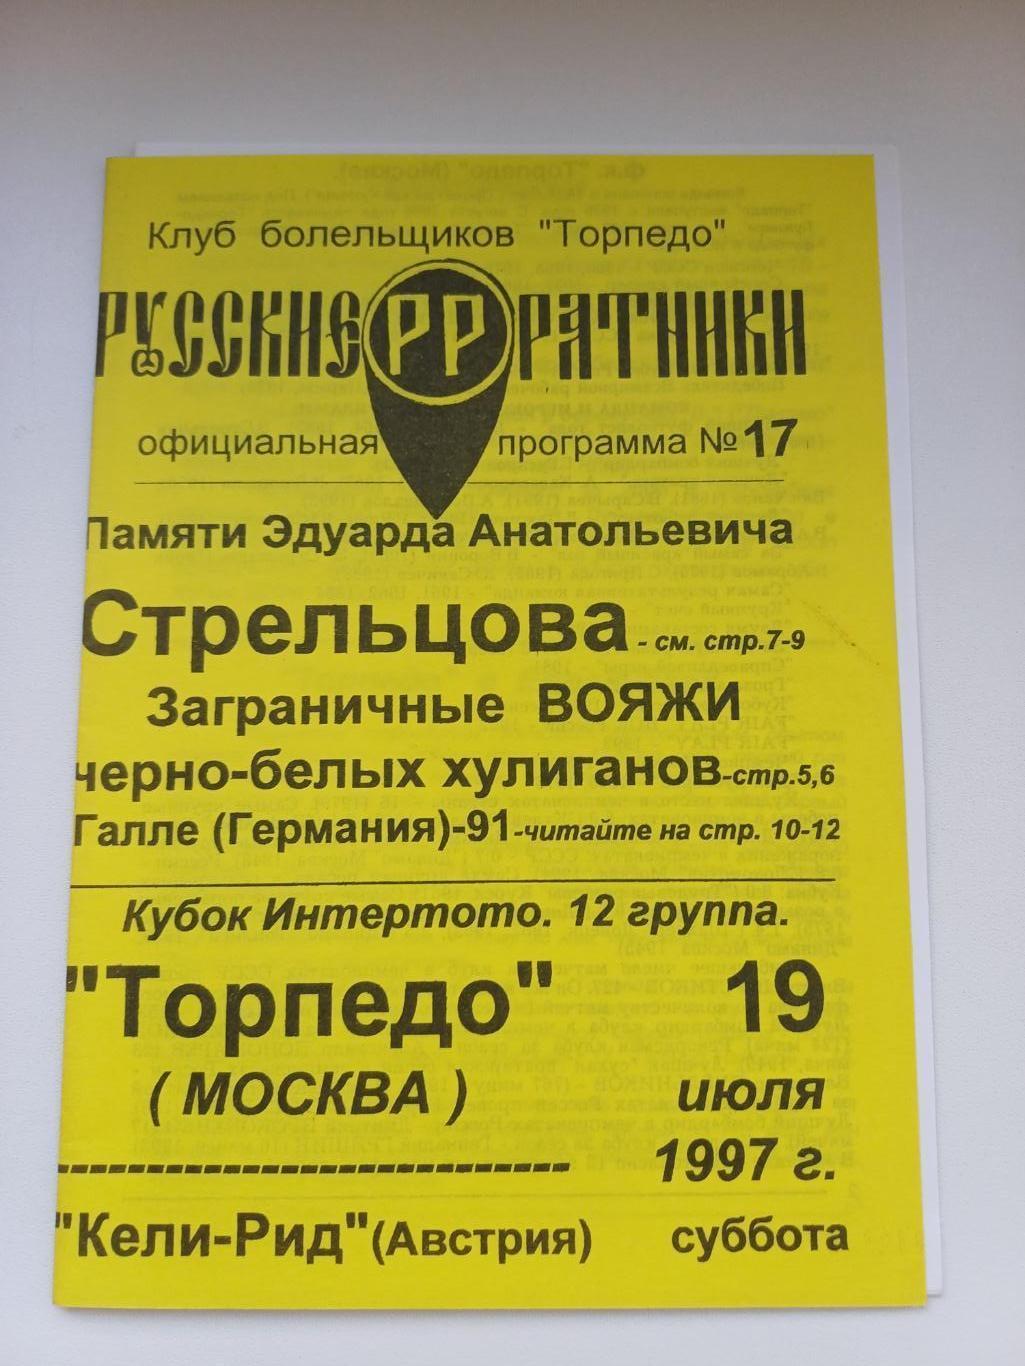 Торпедо (Москва) - Кели Рид 1997 + ОТЧЕТ